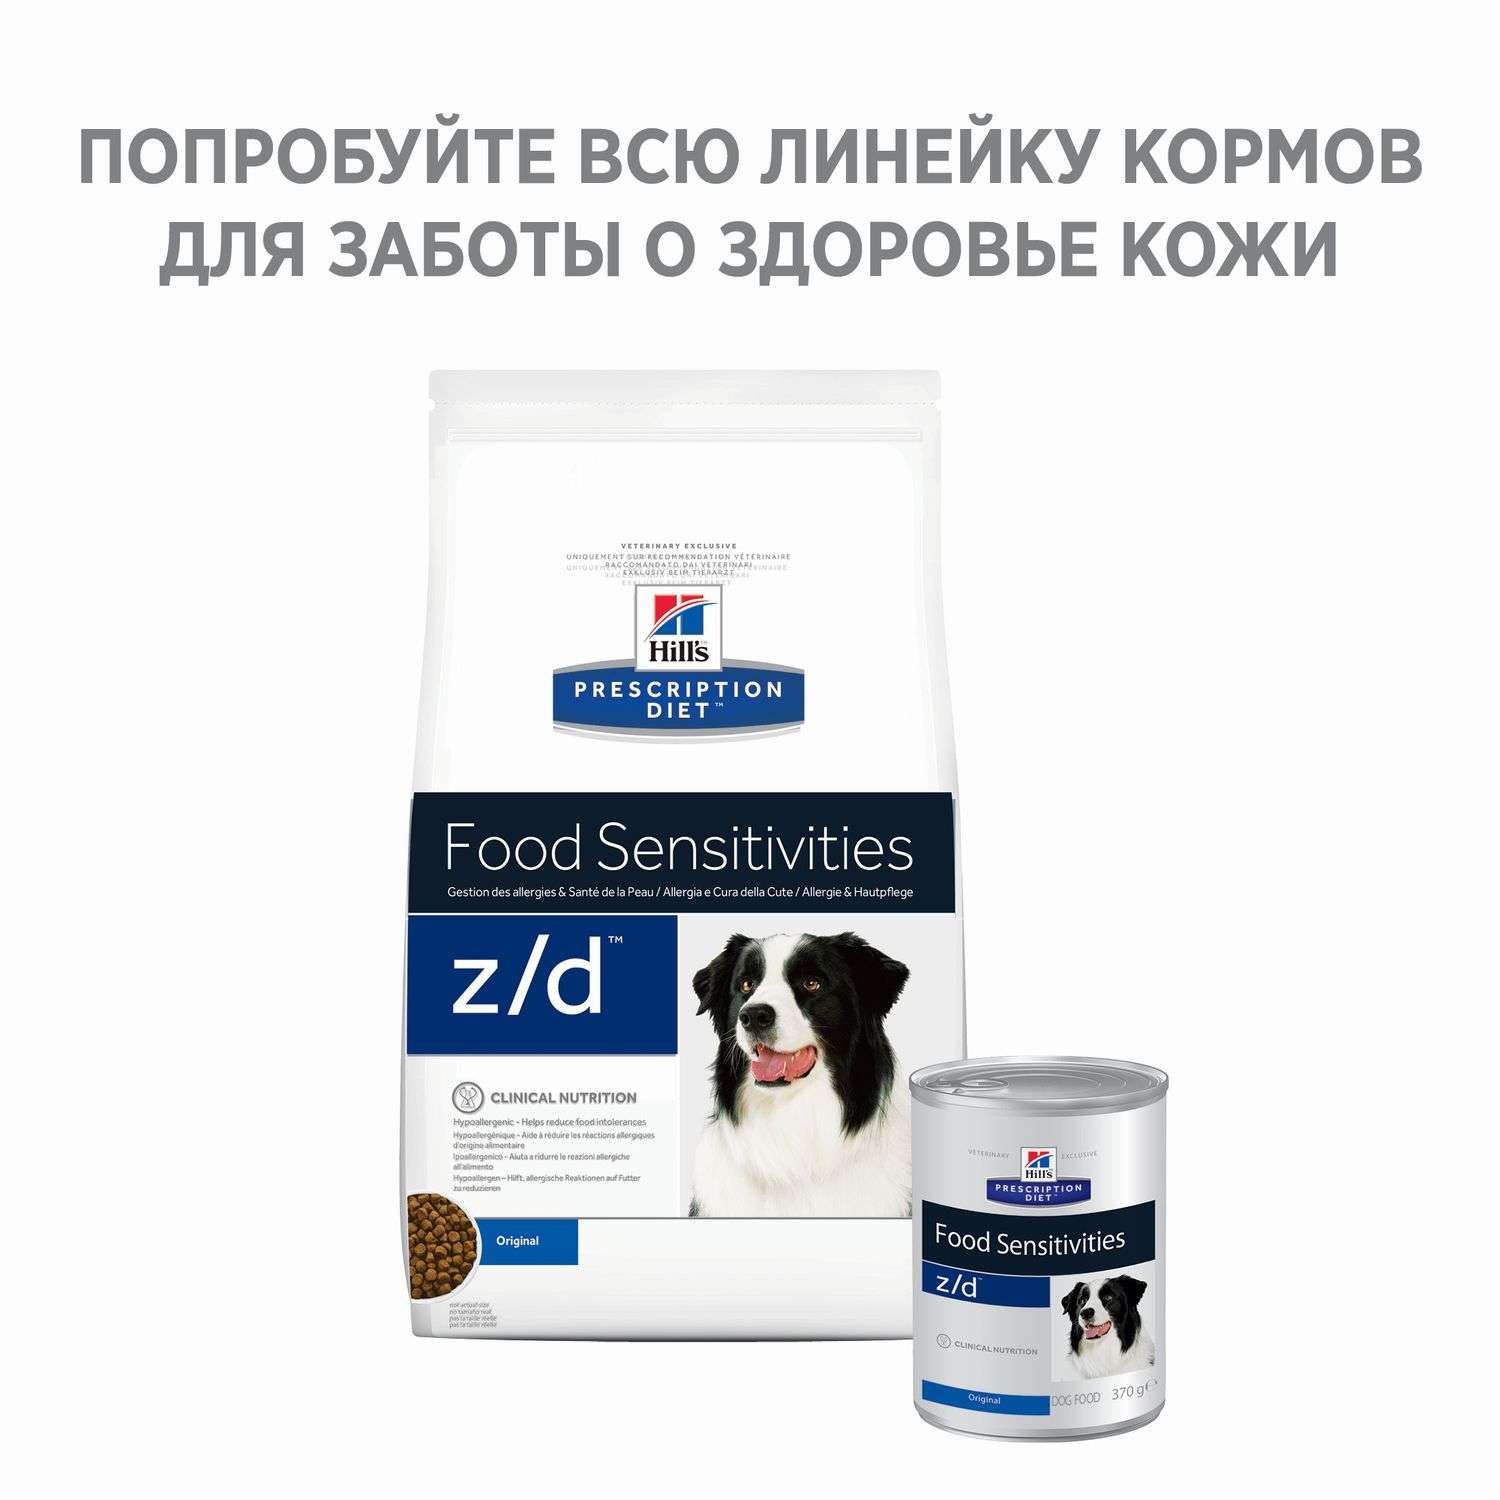 Корм для собак HILLS 370г Prescription Diet z/d Food Sensitivities для кожи при аллергии и заболеваниях кожи консервированный - фото 6